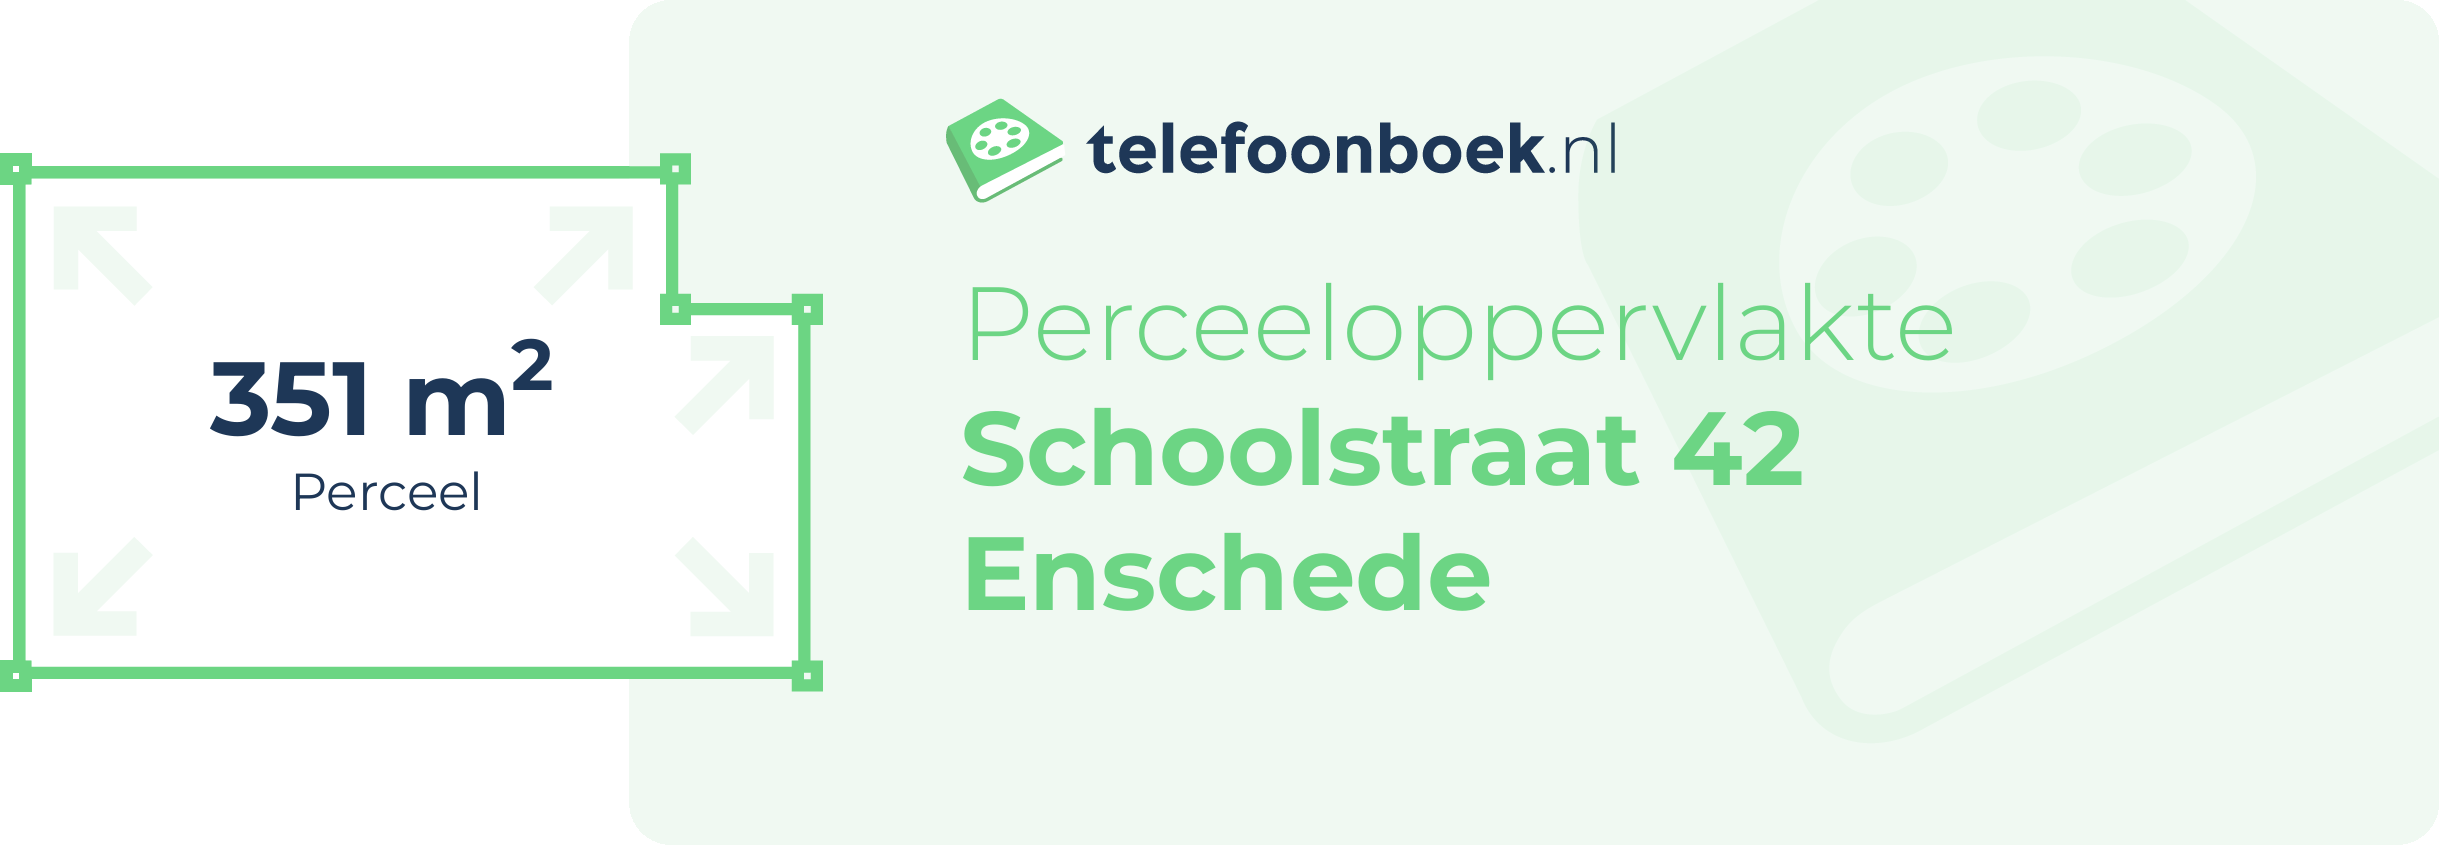 Perceeloppervlakte Schoolstraat 42 Enschede